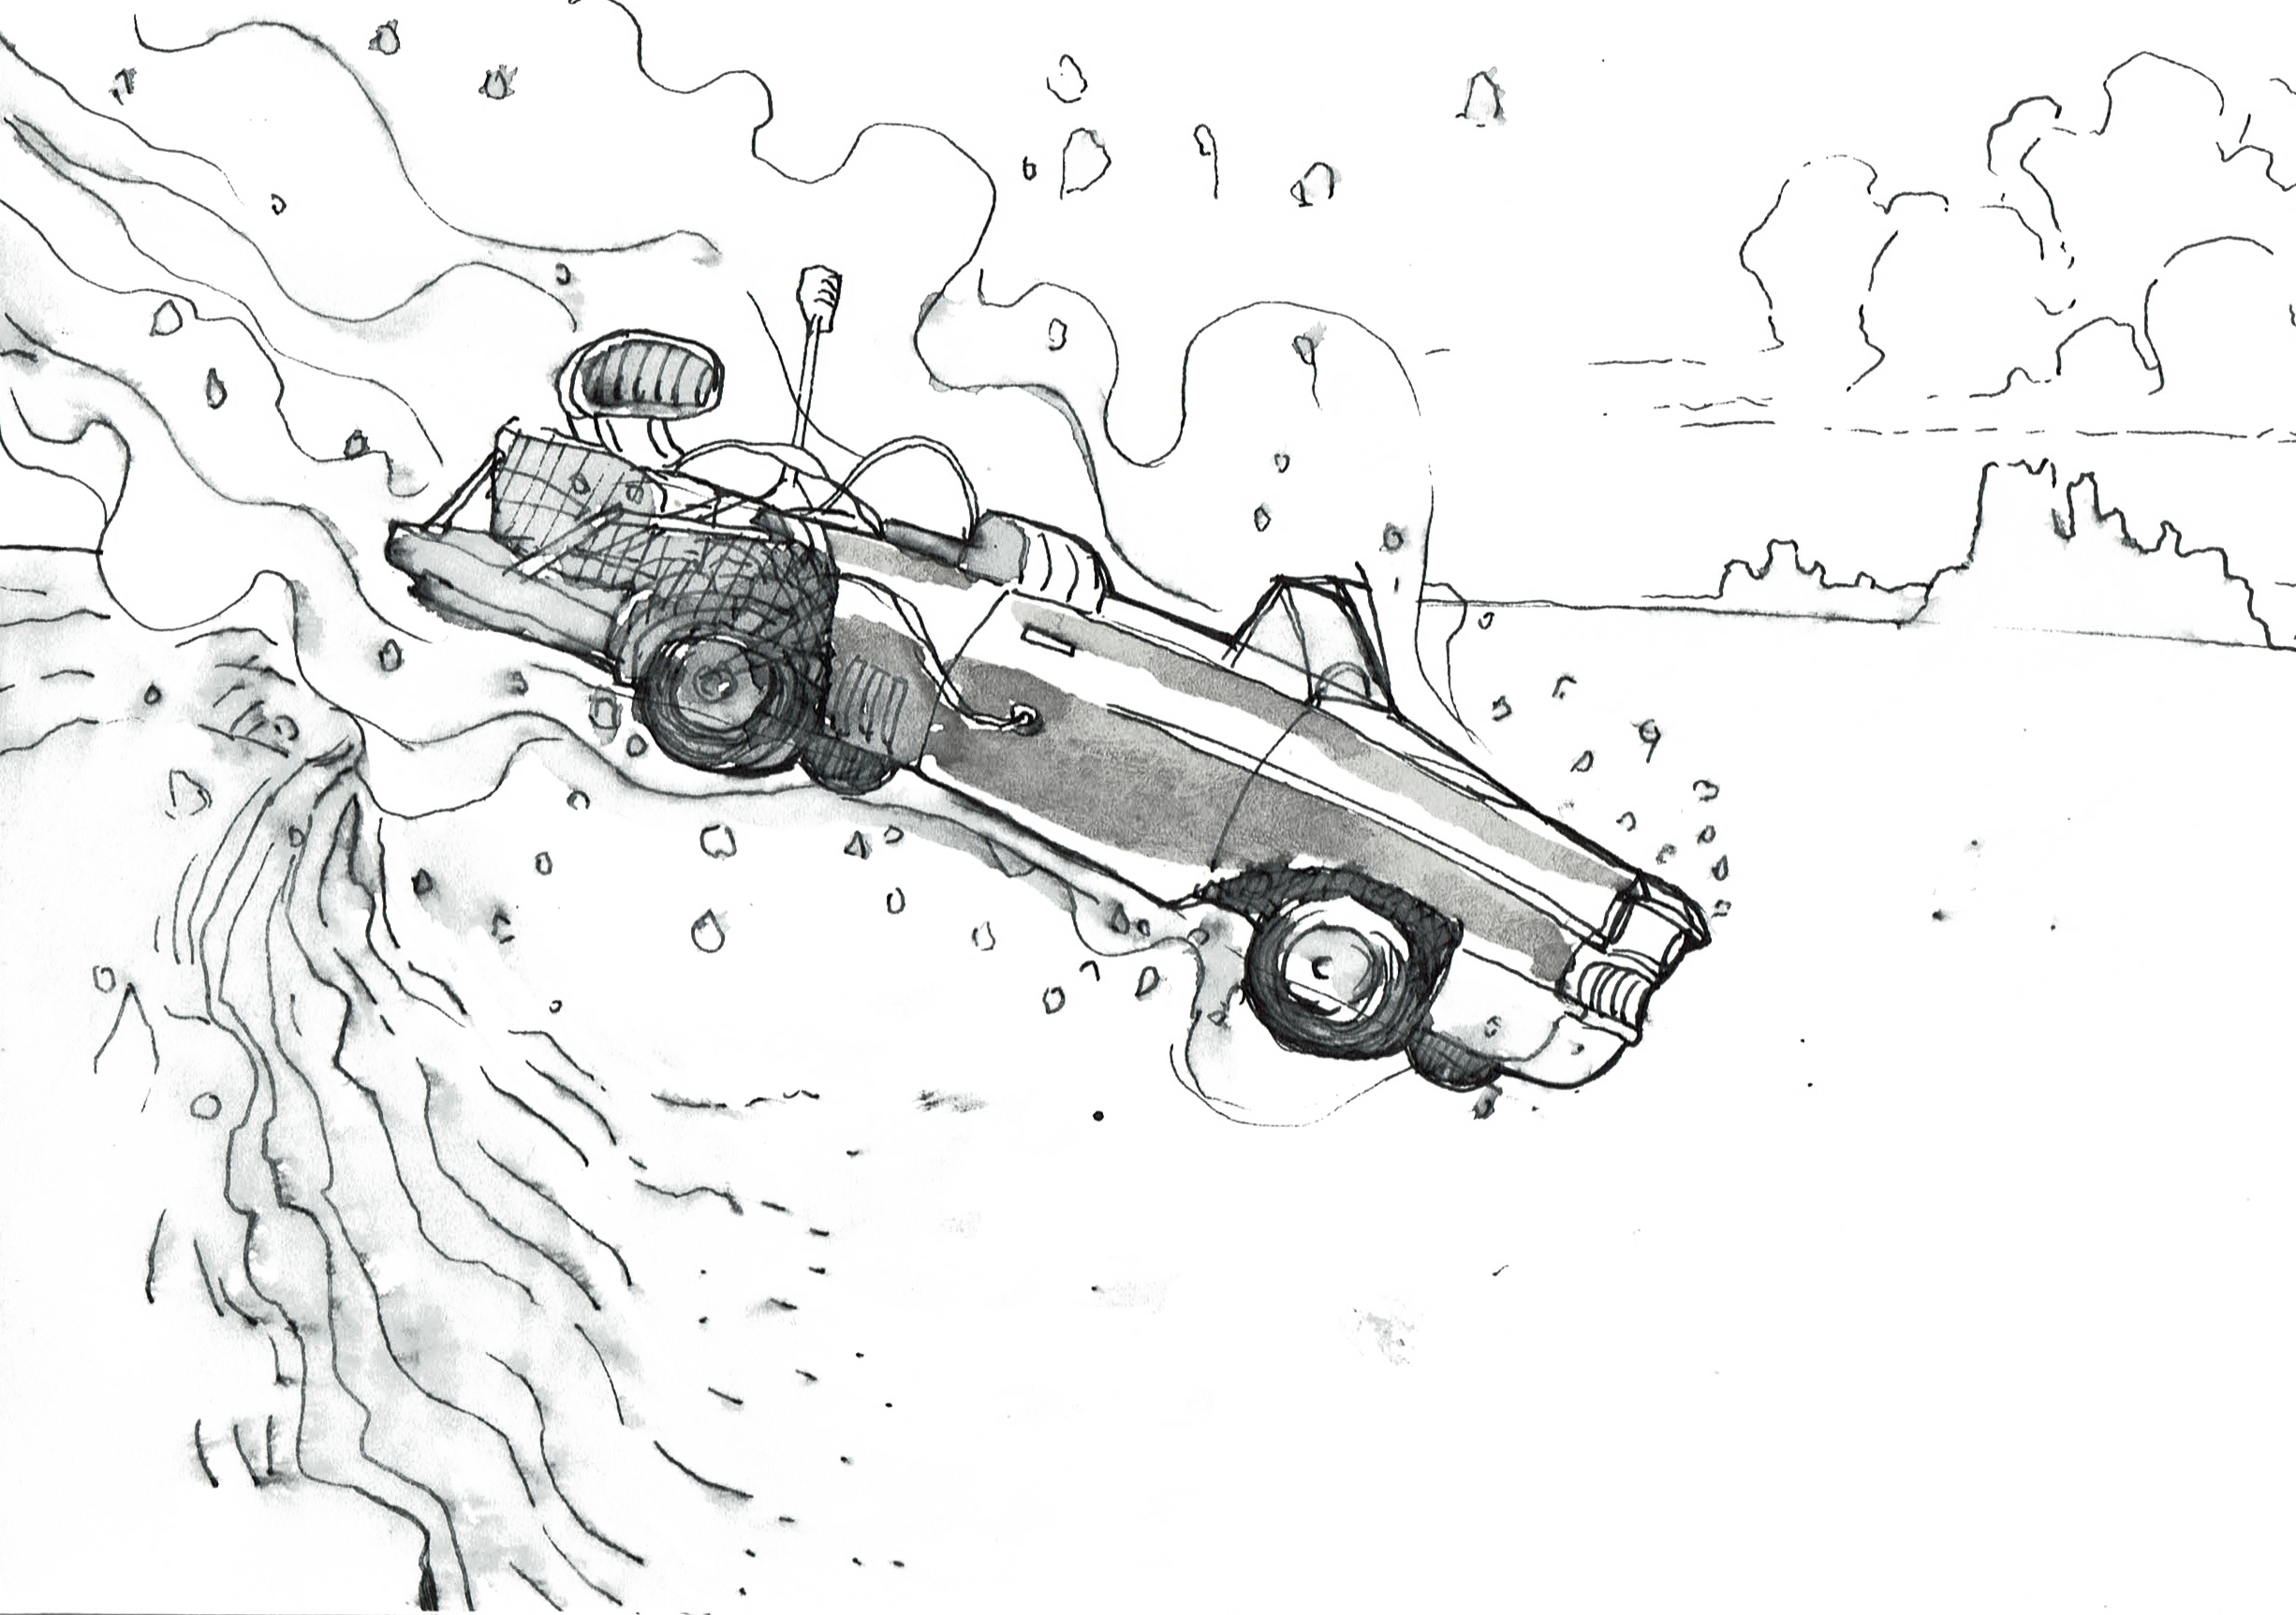 Dejavú - Car sketch